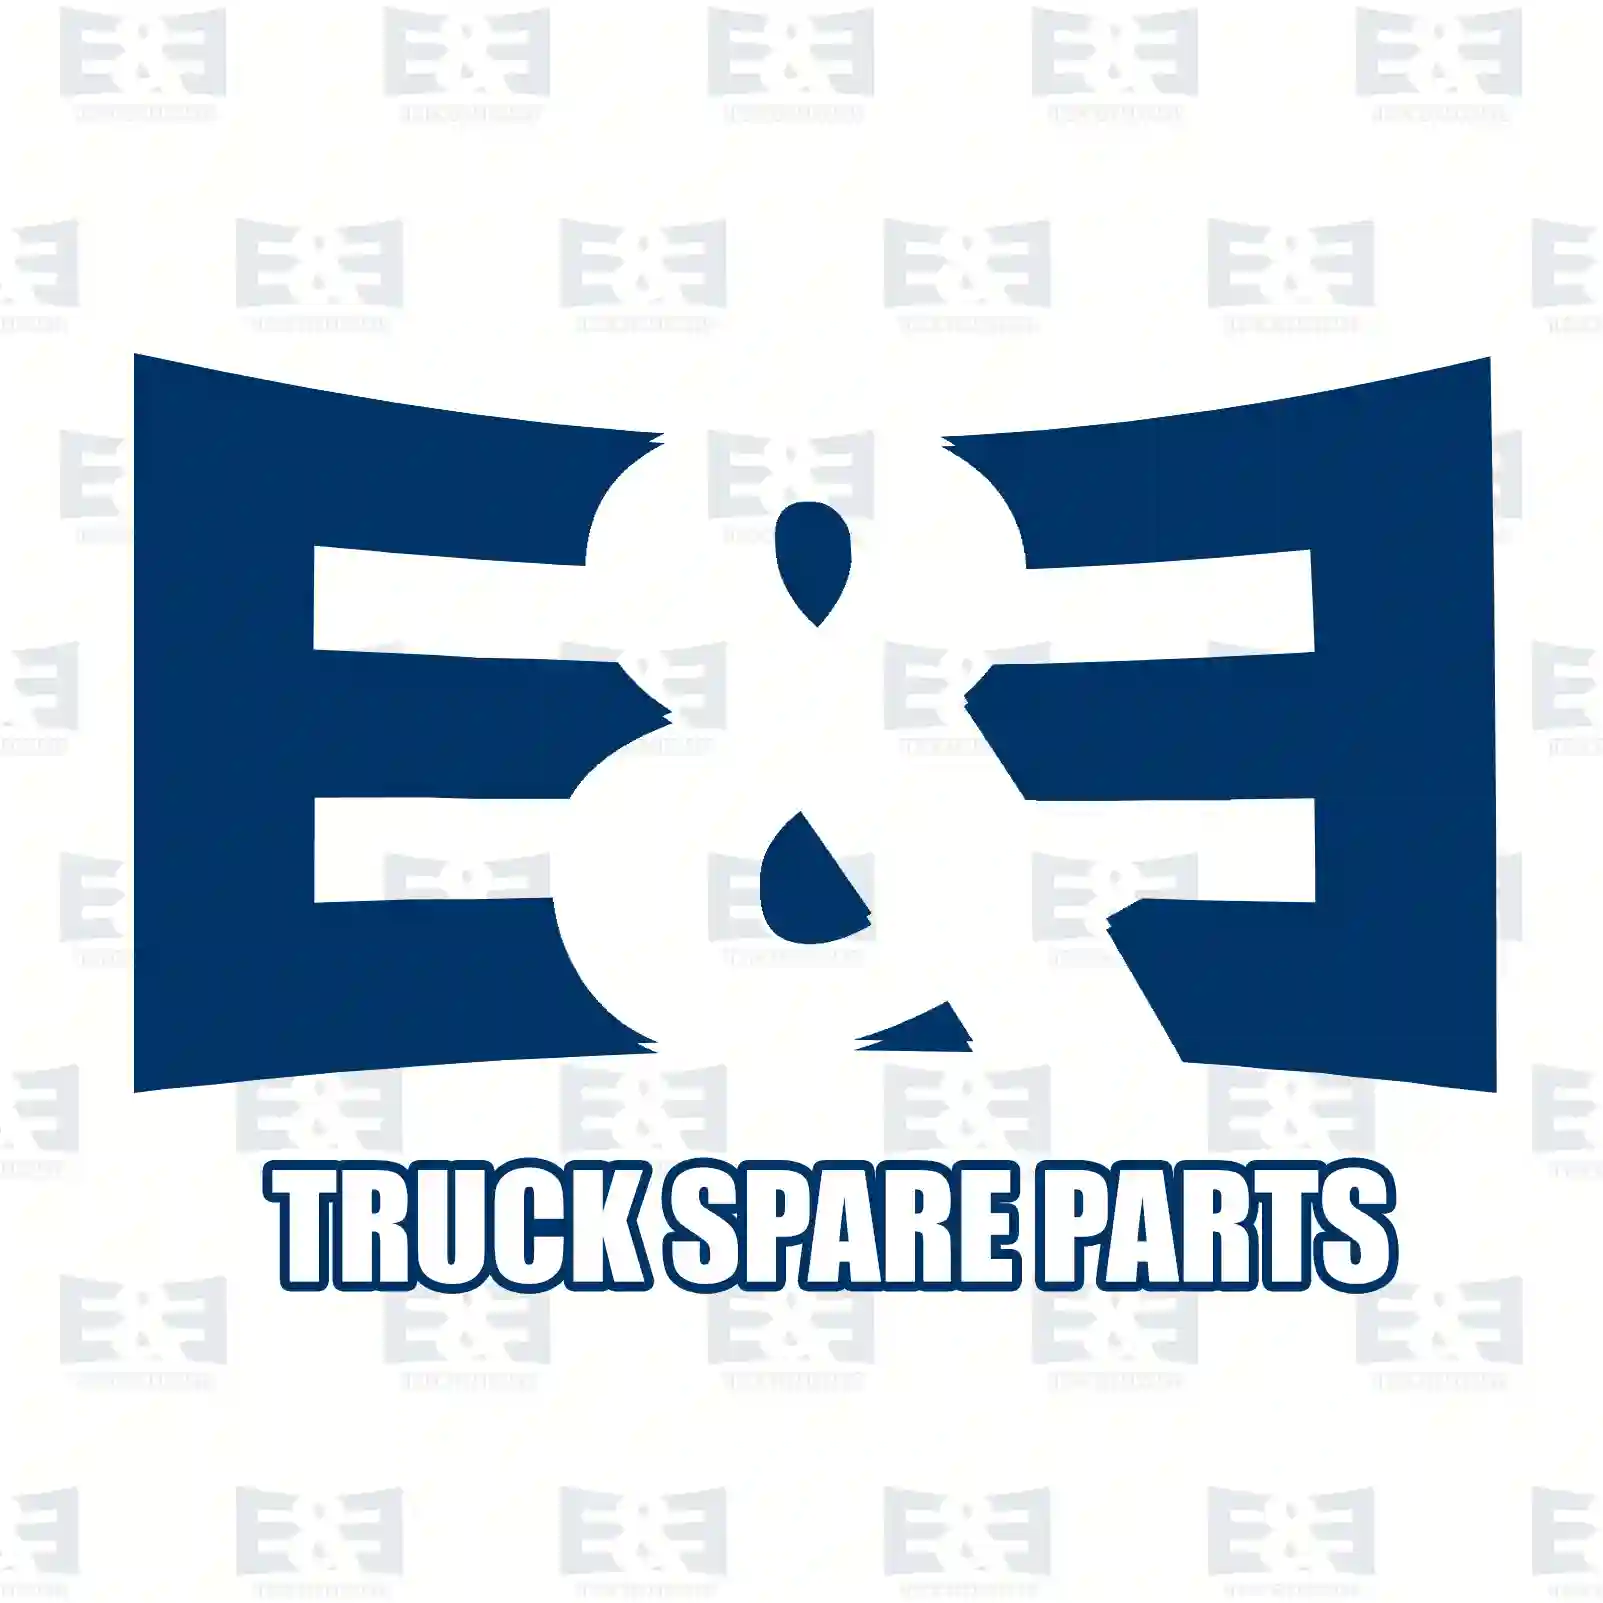 Cover, wiper arm, 2E2292012, 8143712, ZG20370-0008 ||  2E2292012 E&E Truck Spare Parts | Truck Spare Parts, Auotomotive Spare Parts Cover, wiper arm, 2E2292012, 8143712, ZG20370-0008 ||  2E2292012 E&E Truck Spare Parts | Truck Spare Parts, Auotomotive Spare Parts